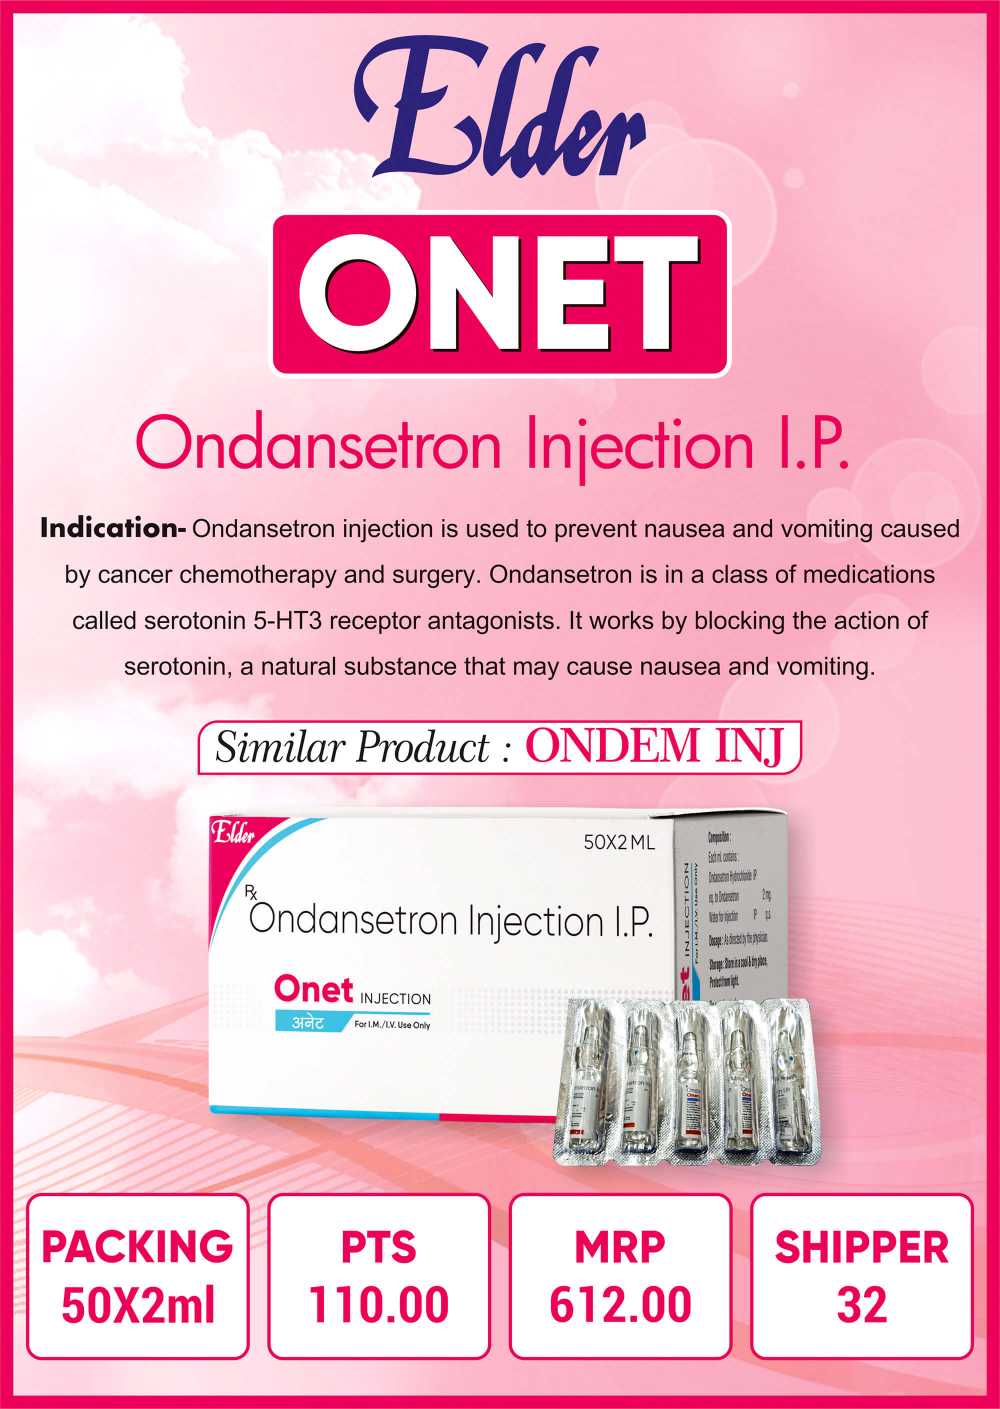 ONET INJECTION – Elder Laboratories Ltd